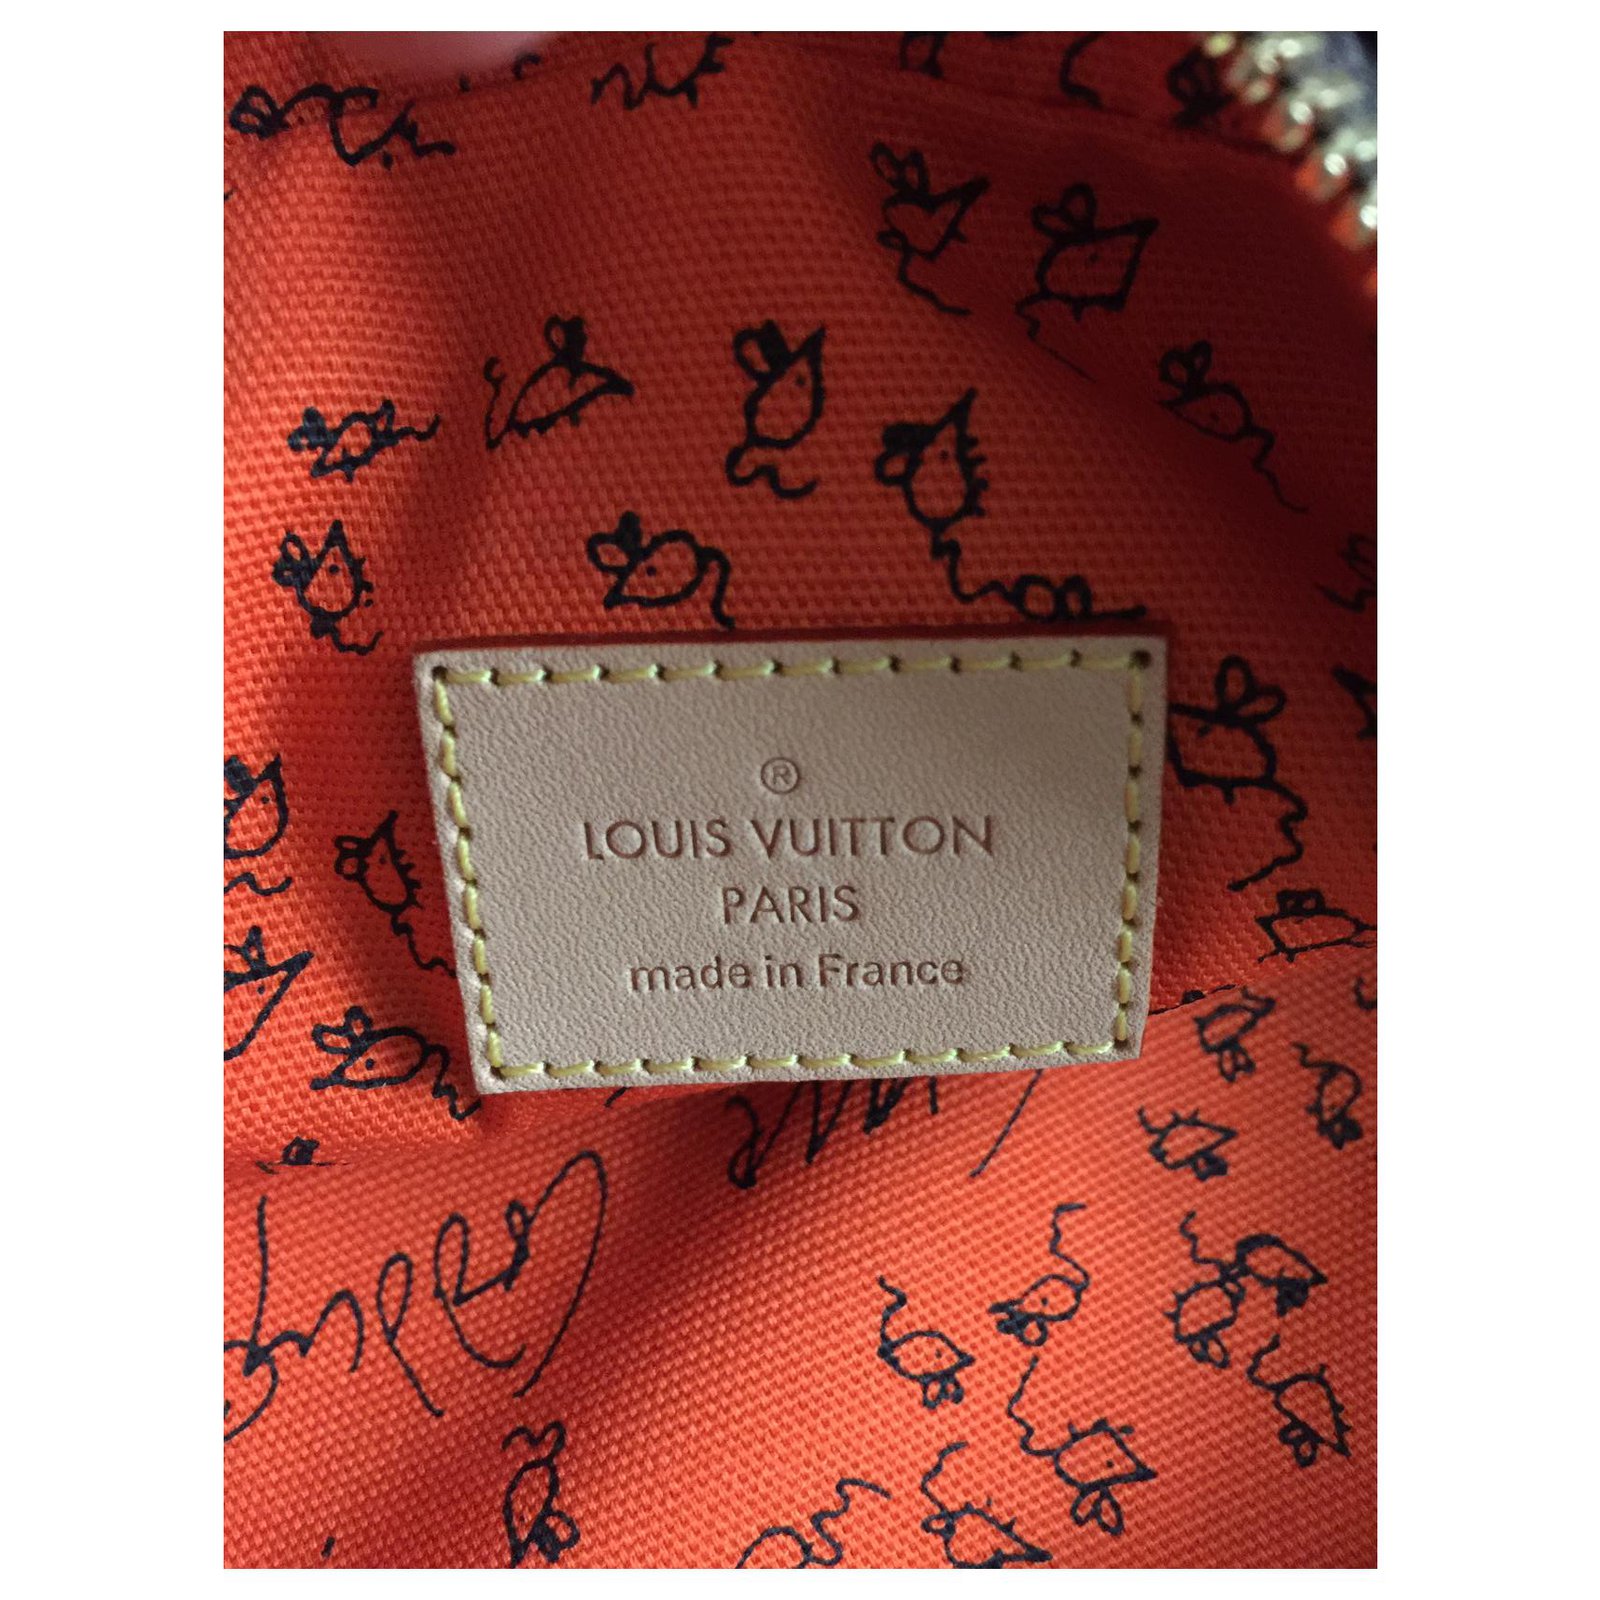 LOUIS VUITTON Catogram Grace Coddington Paname Bag